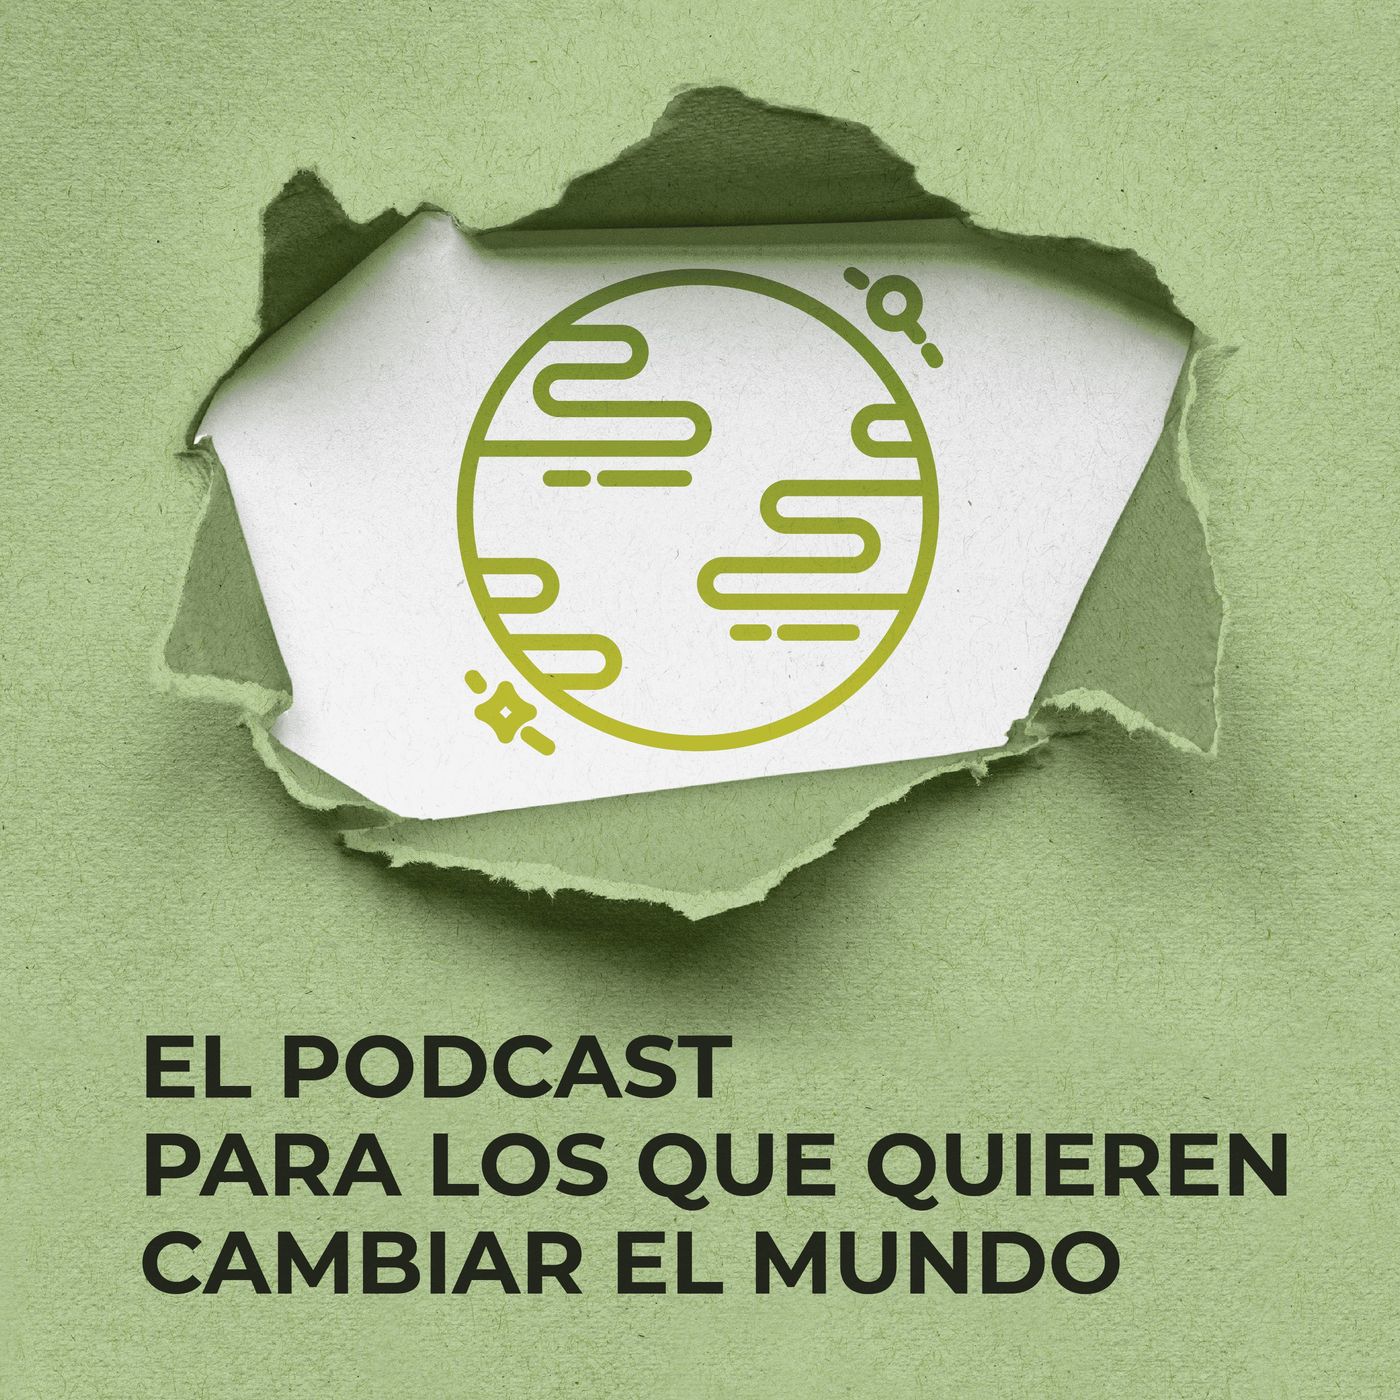 El podcast para los que quieren cambiar el mundo